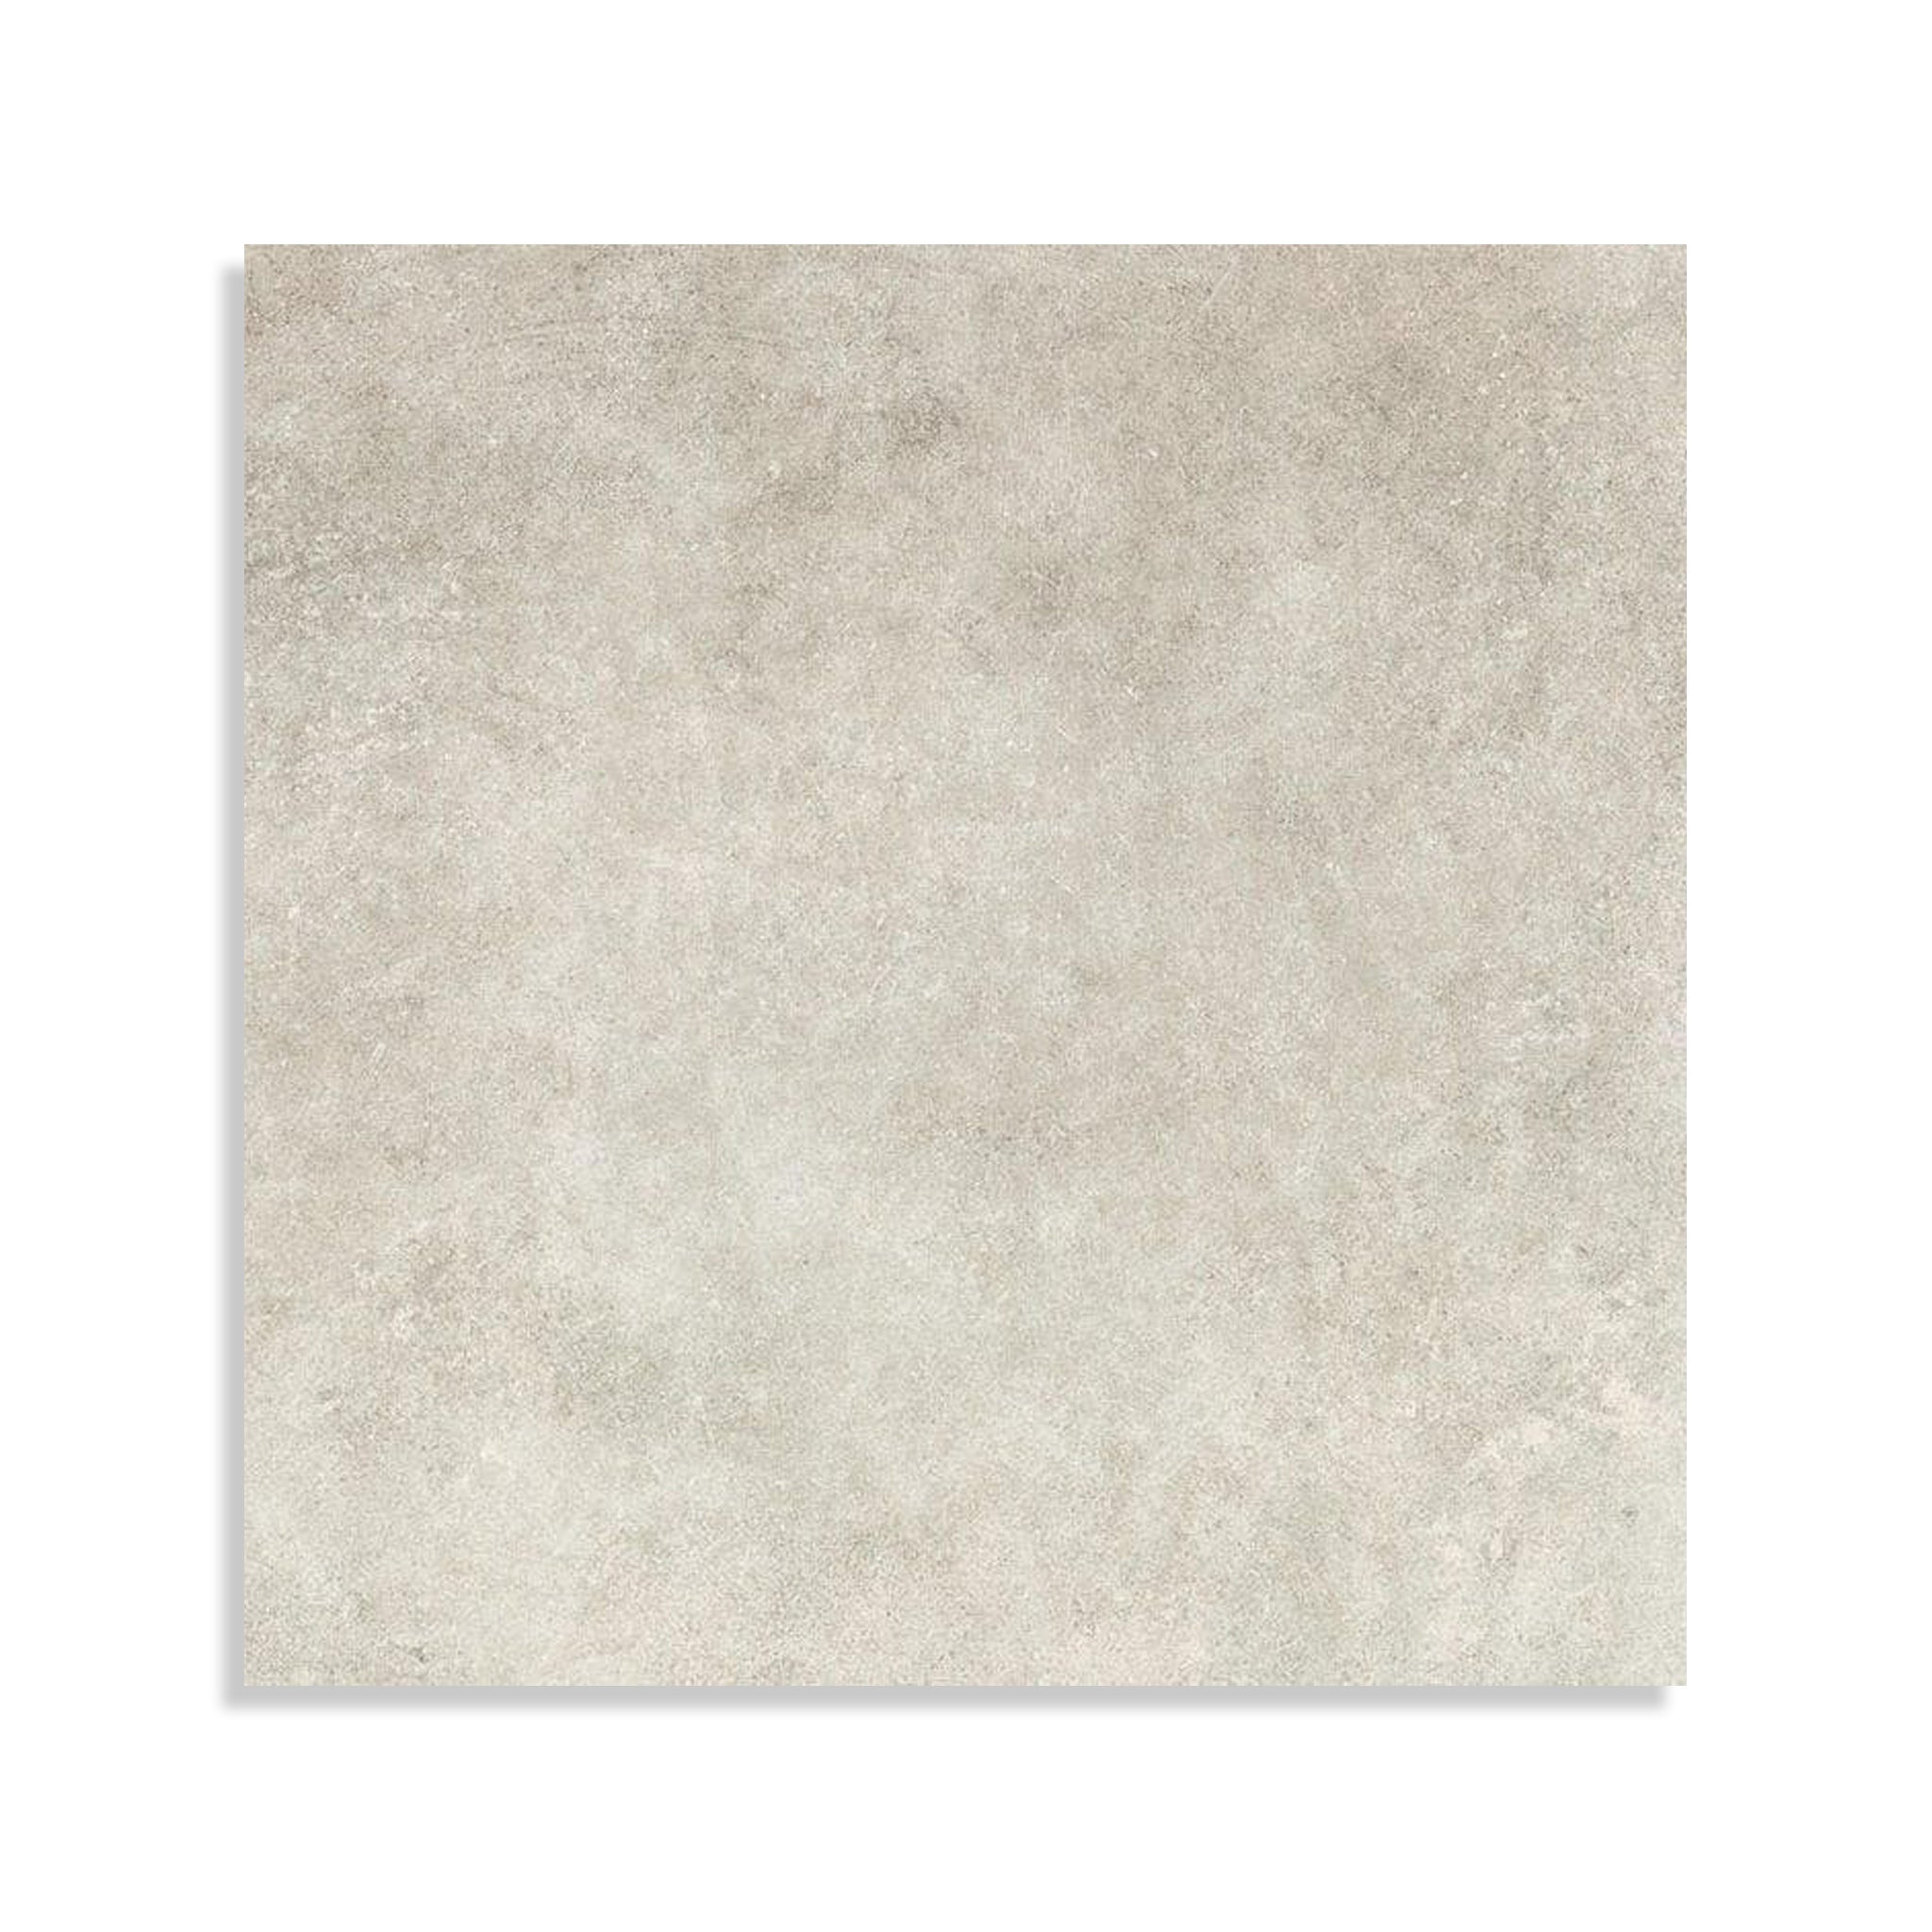 Minoli - Codec White Matt, 60 x 60cm (VC03633) - Tiles &amp; Stone To You